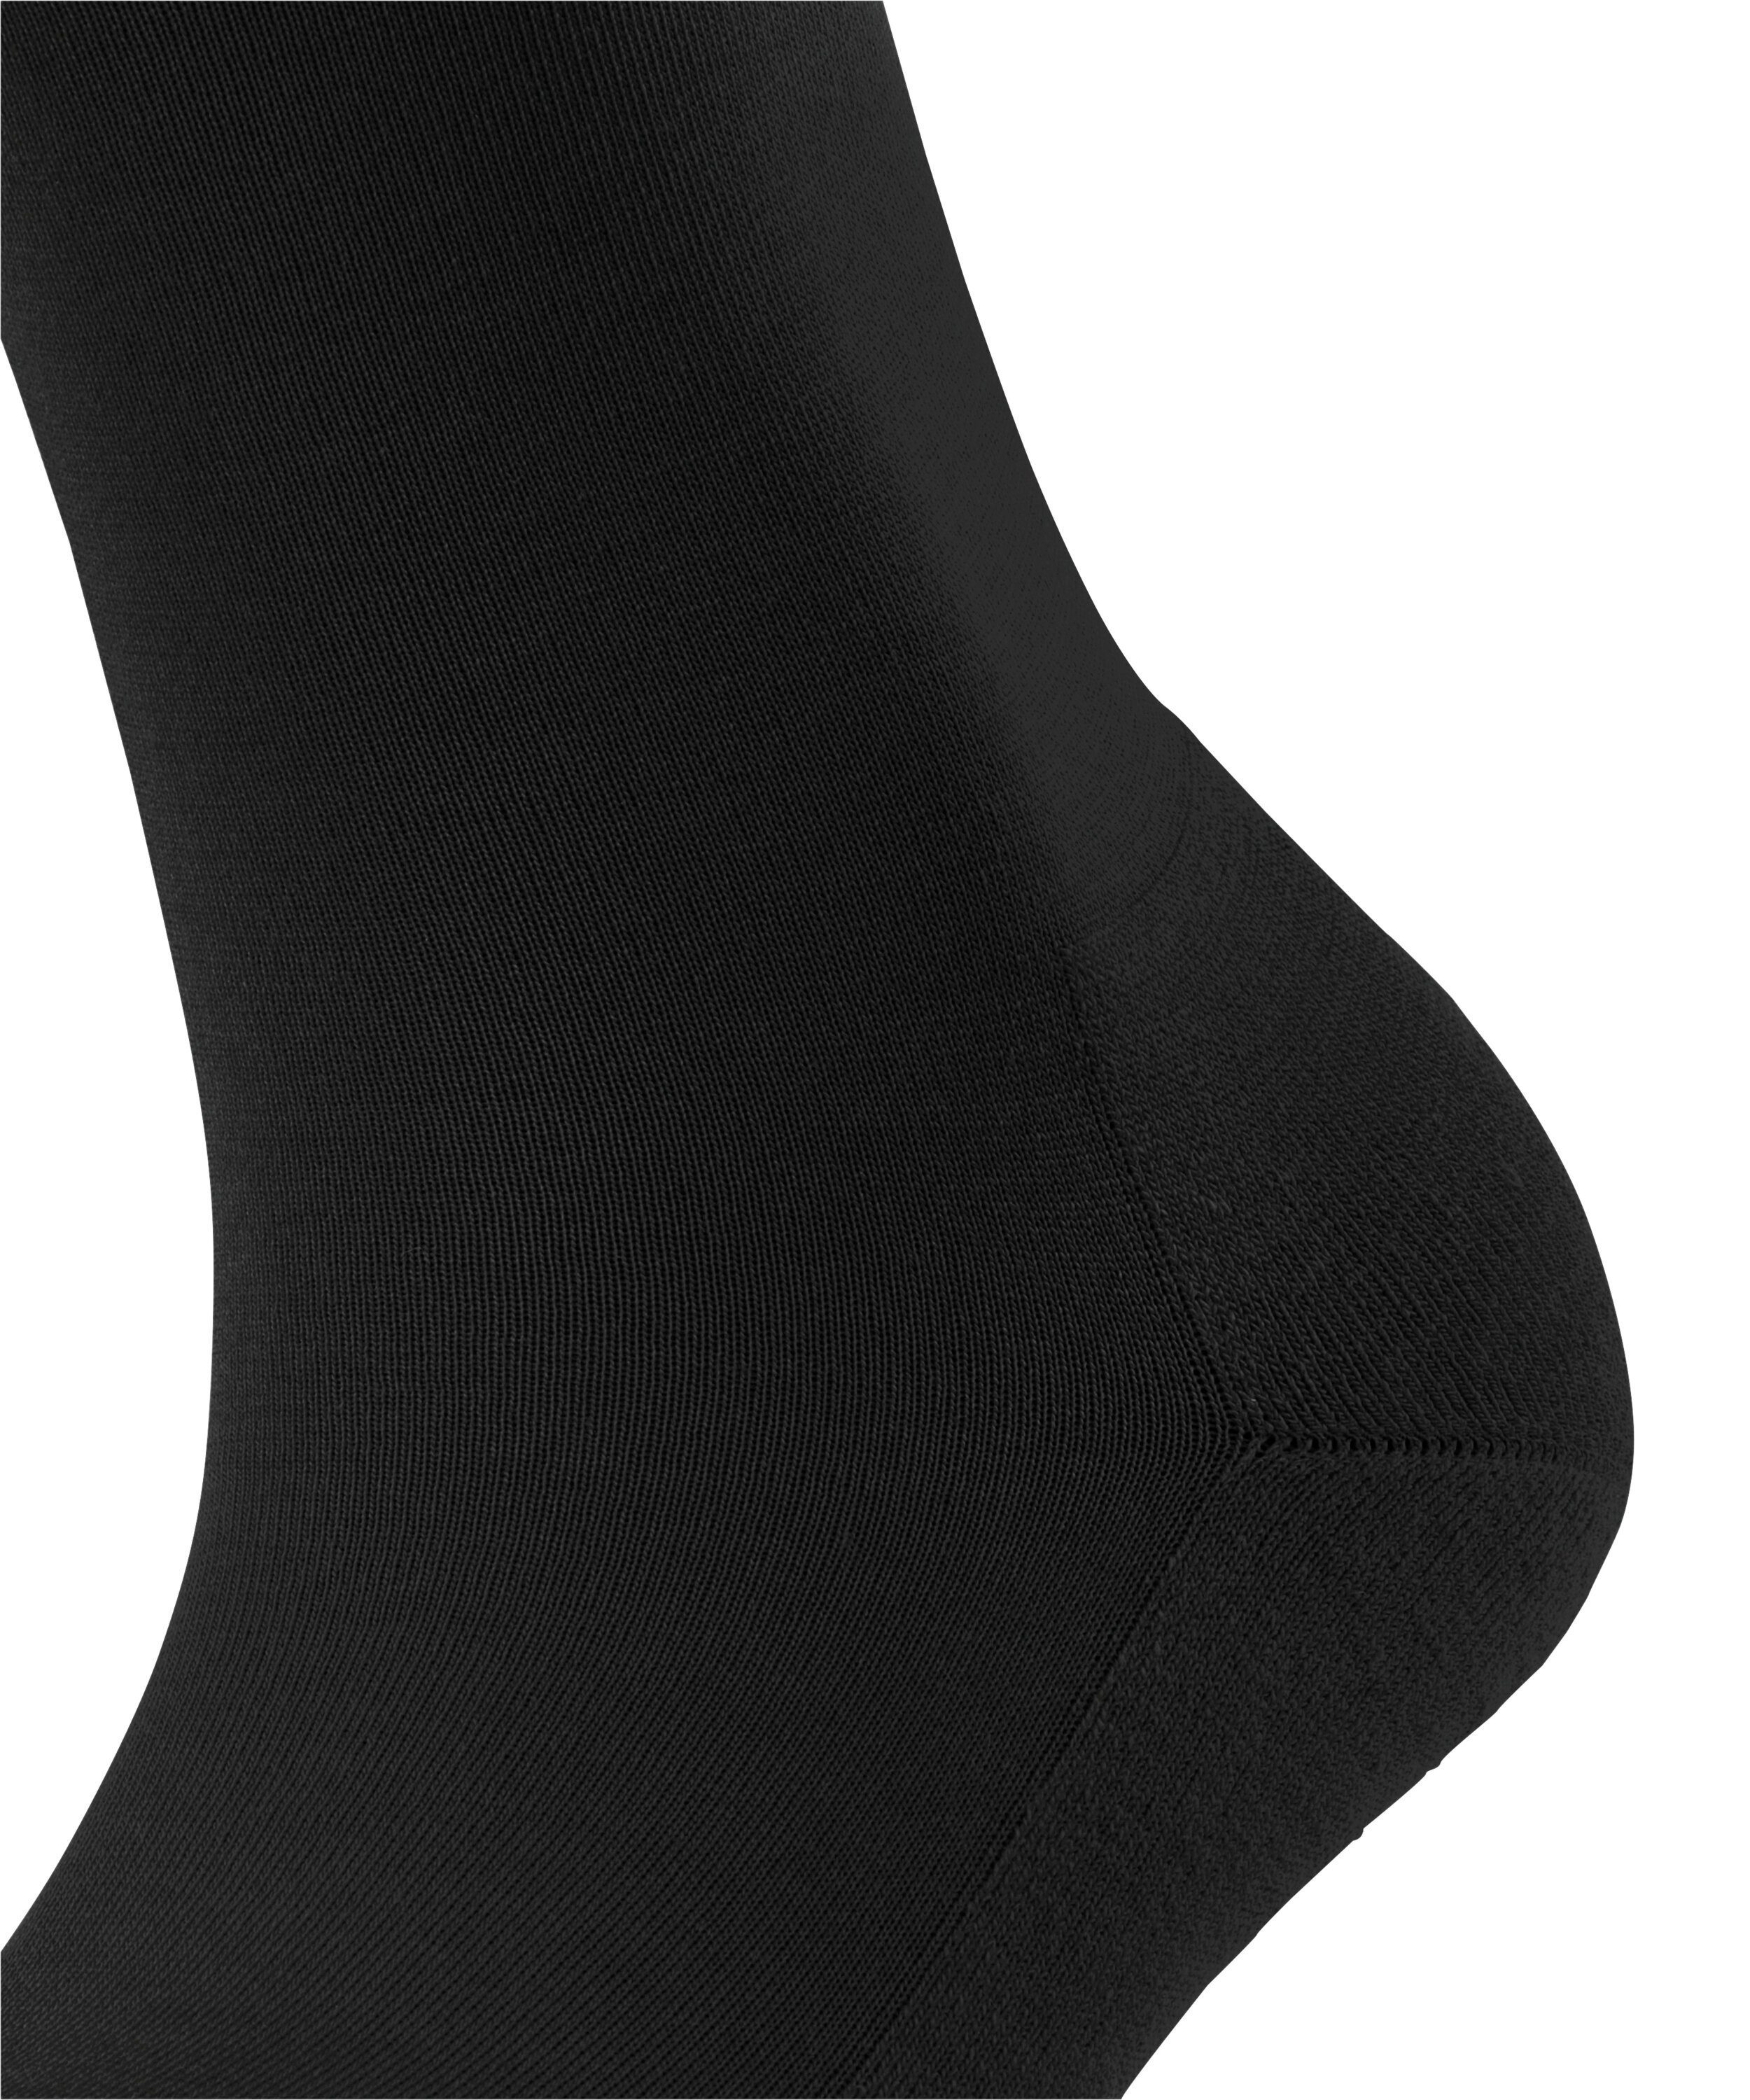 FALKE Socken ClimaWool (1-Paar) black (3000)